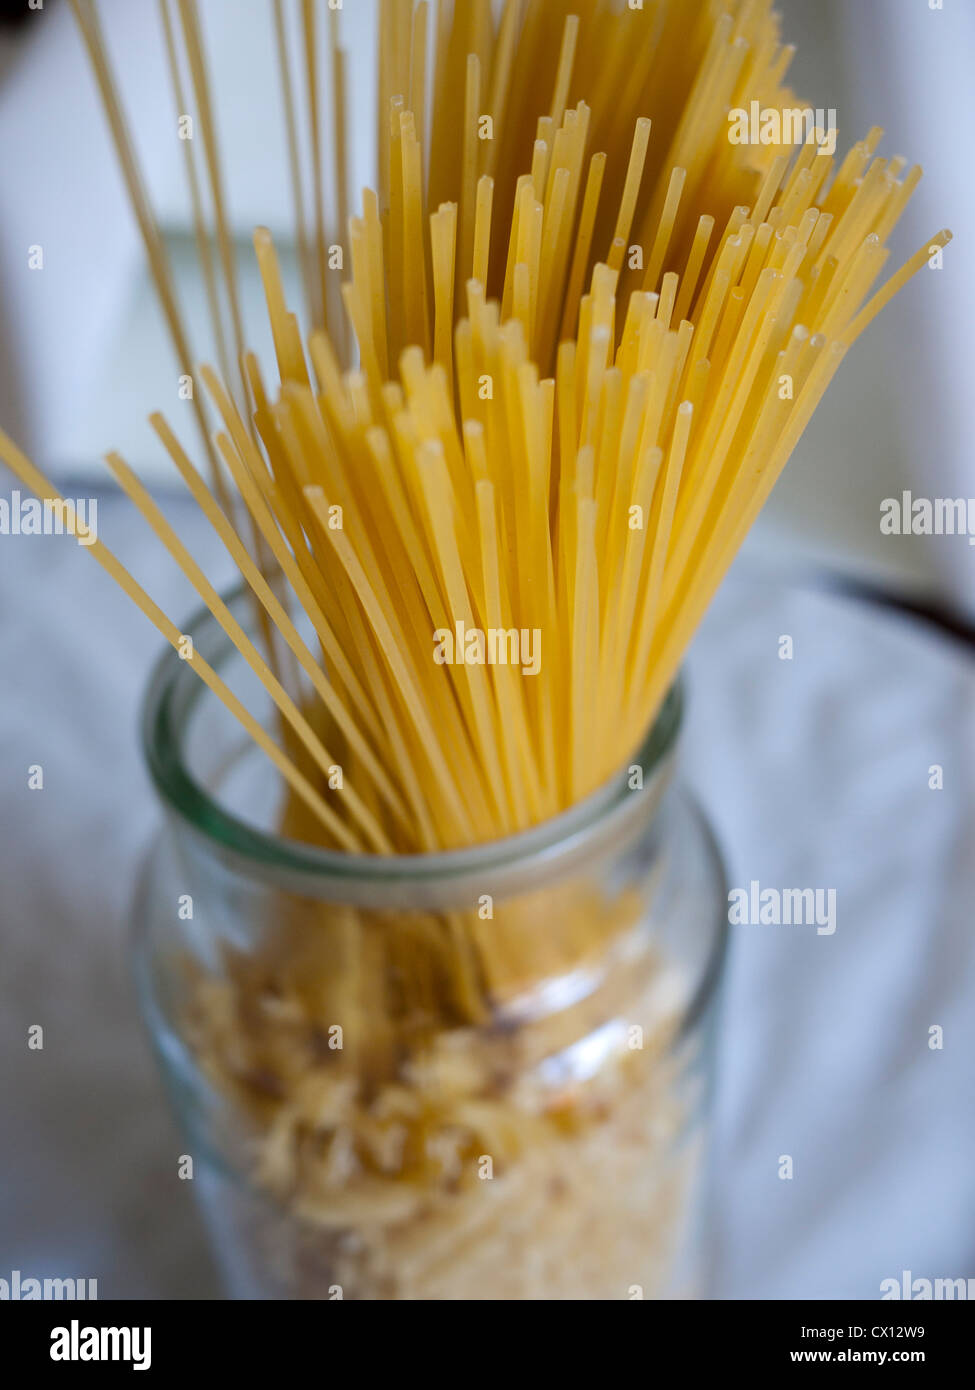 Spaghetti dans un bocal en verre. Banque D'Images